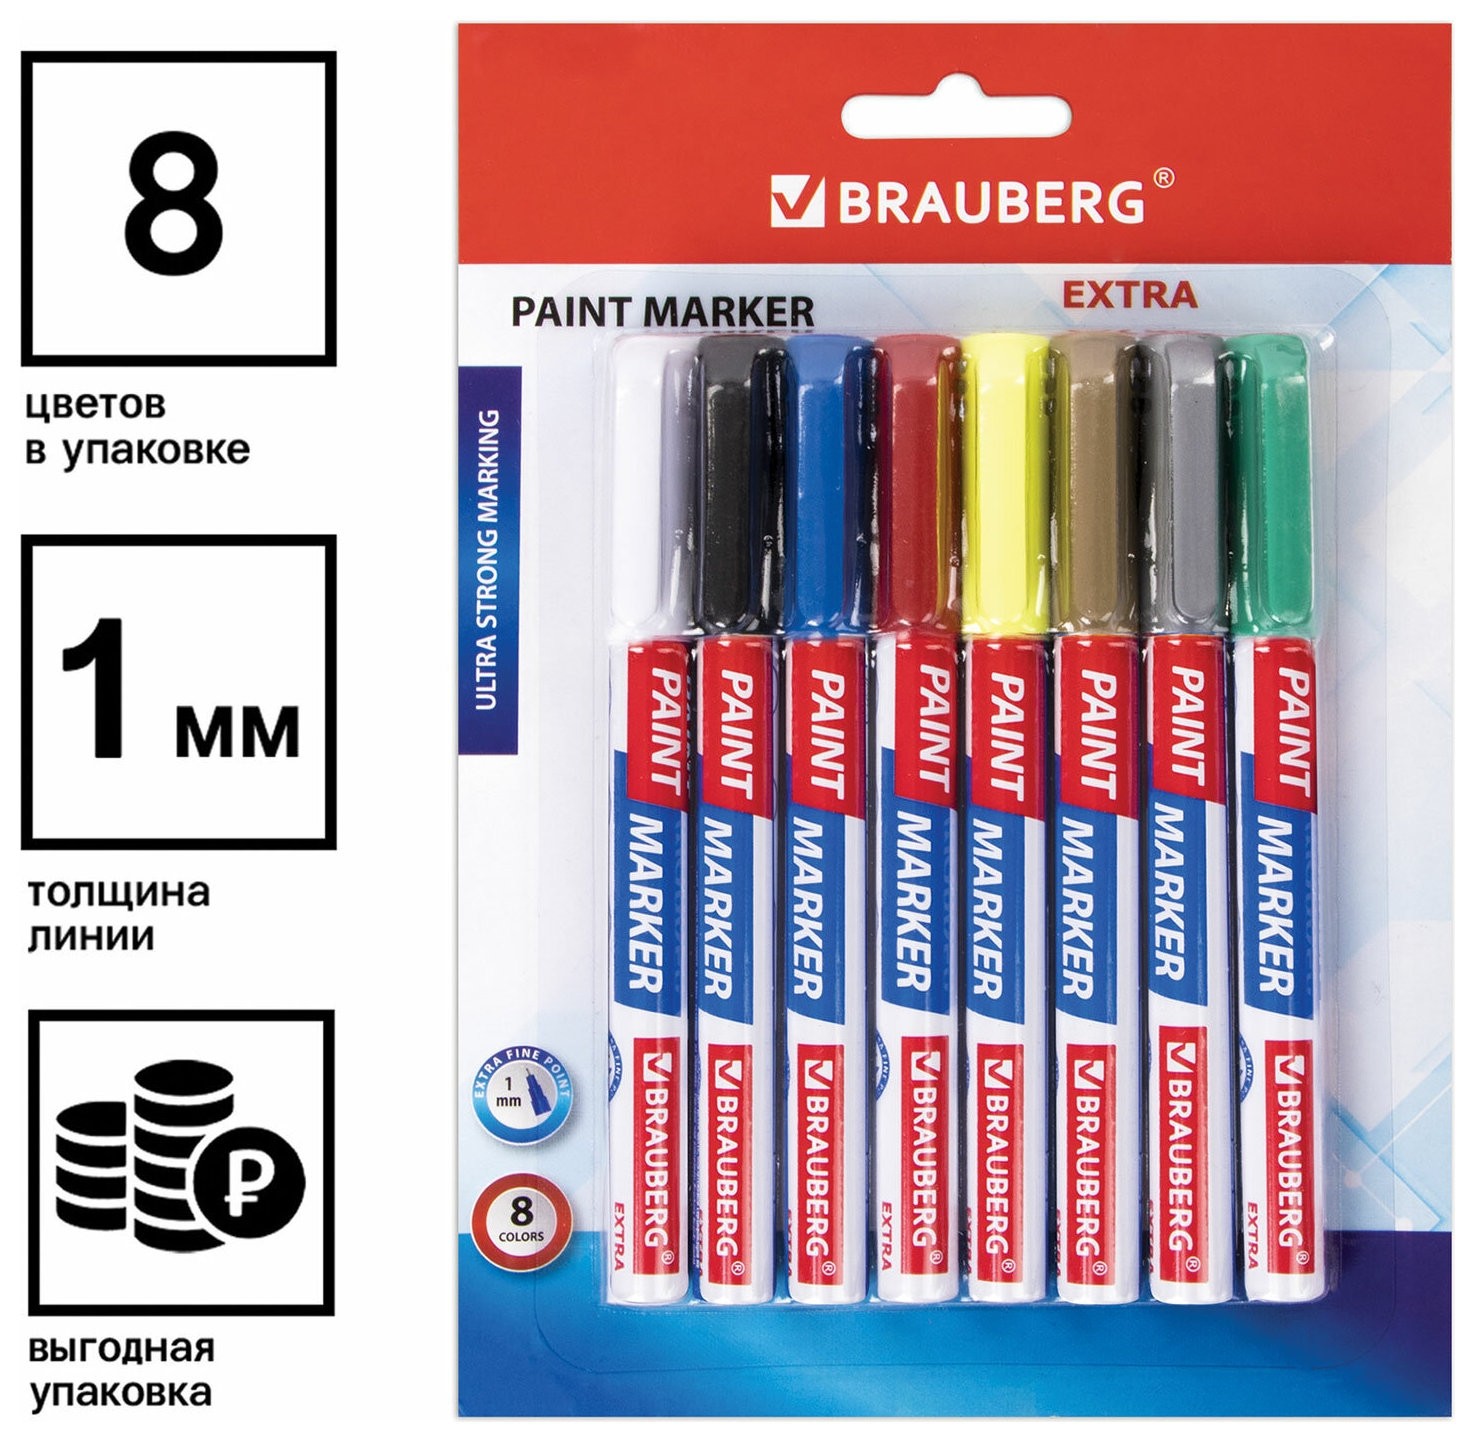 Маркер-краска лаковый Extra (Paint Marker) 1 мм, набор 8 цветов, улучшенная нитро-основа, Brauberg, 151991